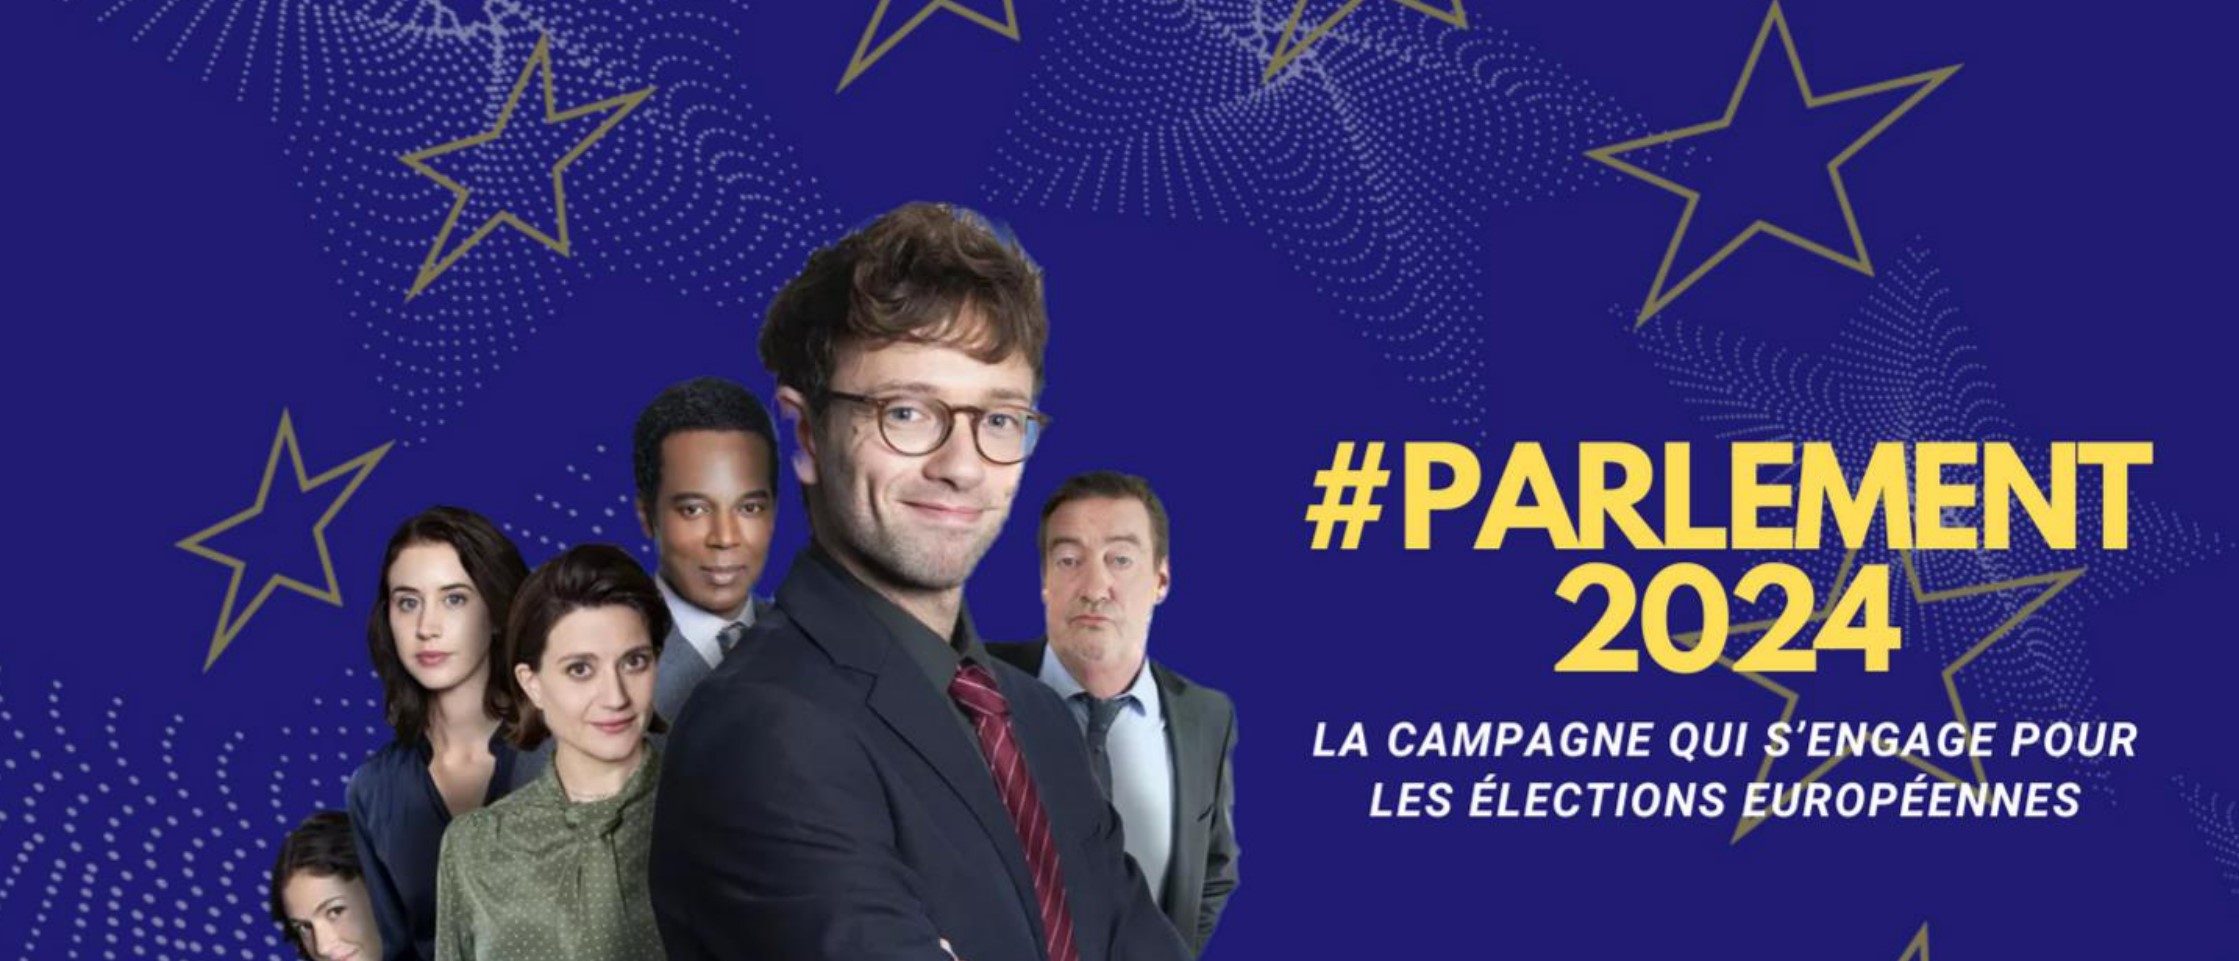 Elections Européennes – Bilan de la campagne #Parlement2024 iniciée par l’Institut Jean Monnet